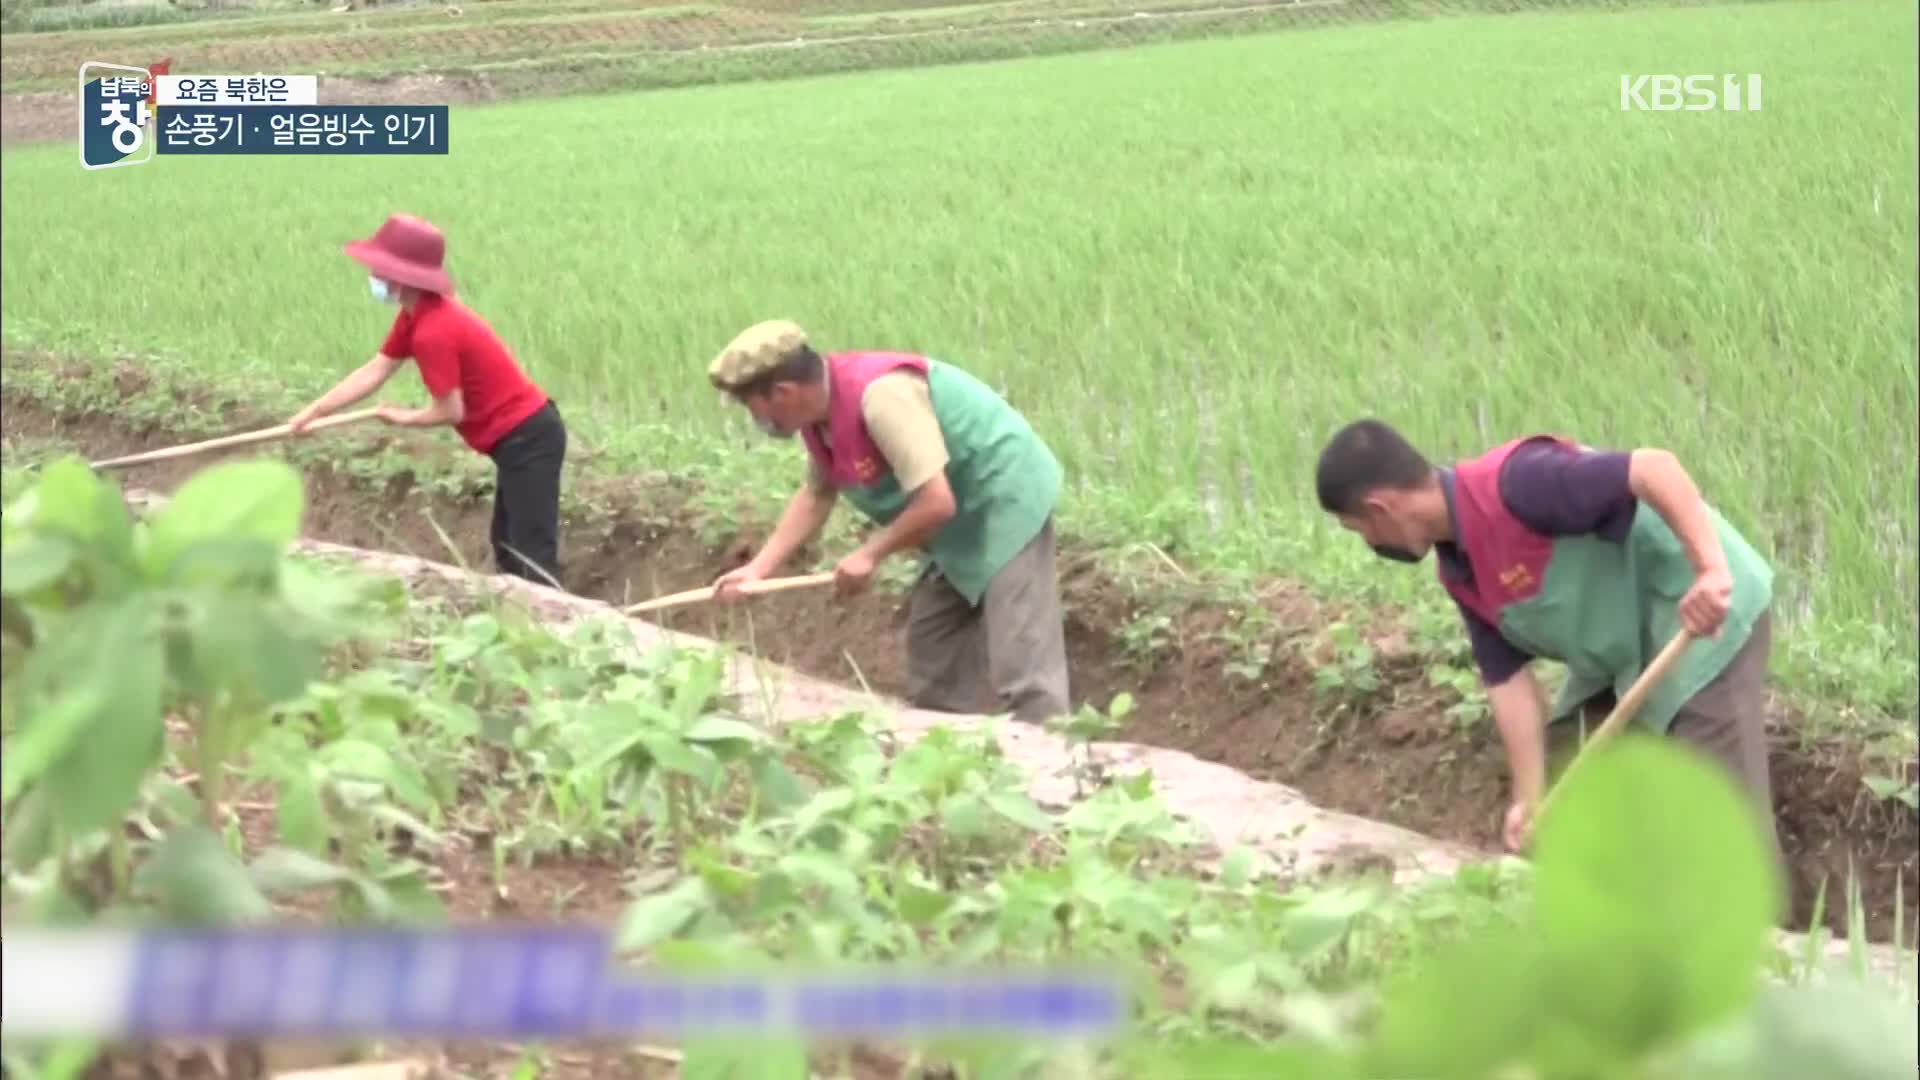 [요즘 북한은] 이번엔 폭염까지…농작물 노심초사 외